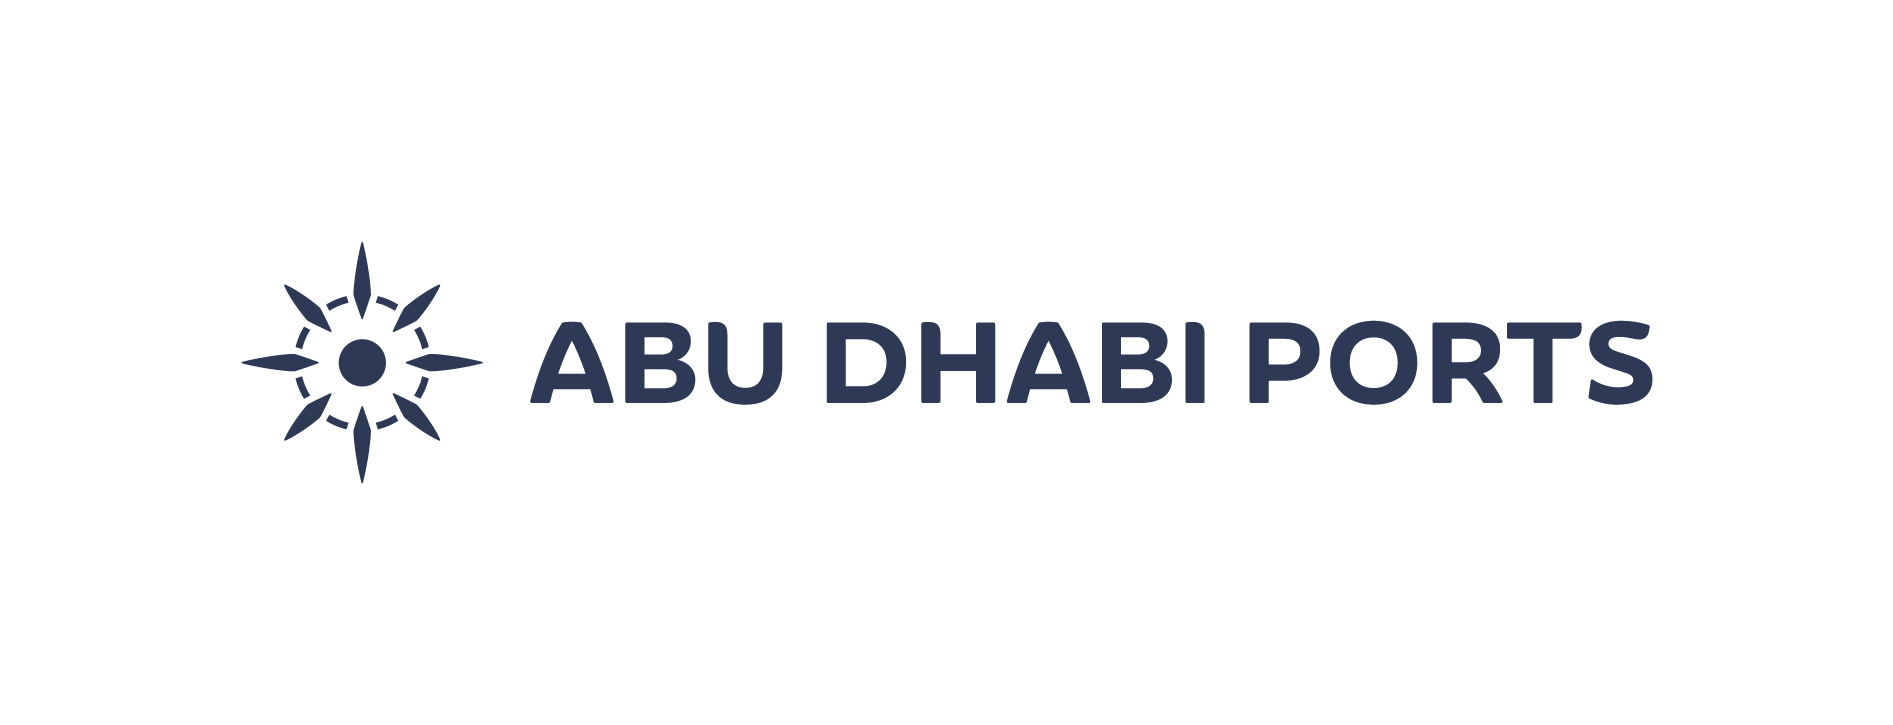 ABU DHABI PORTS